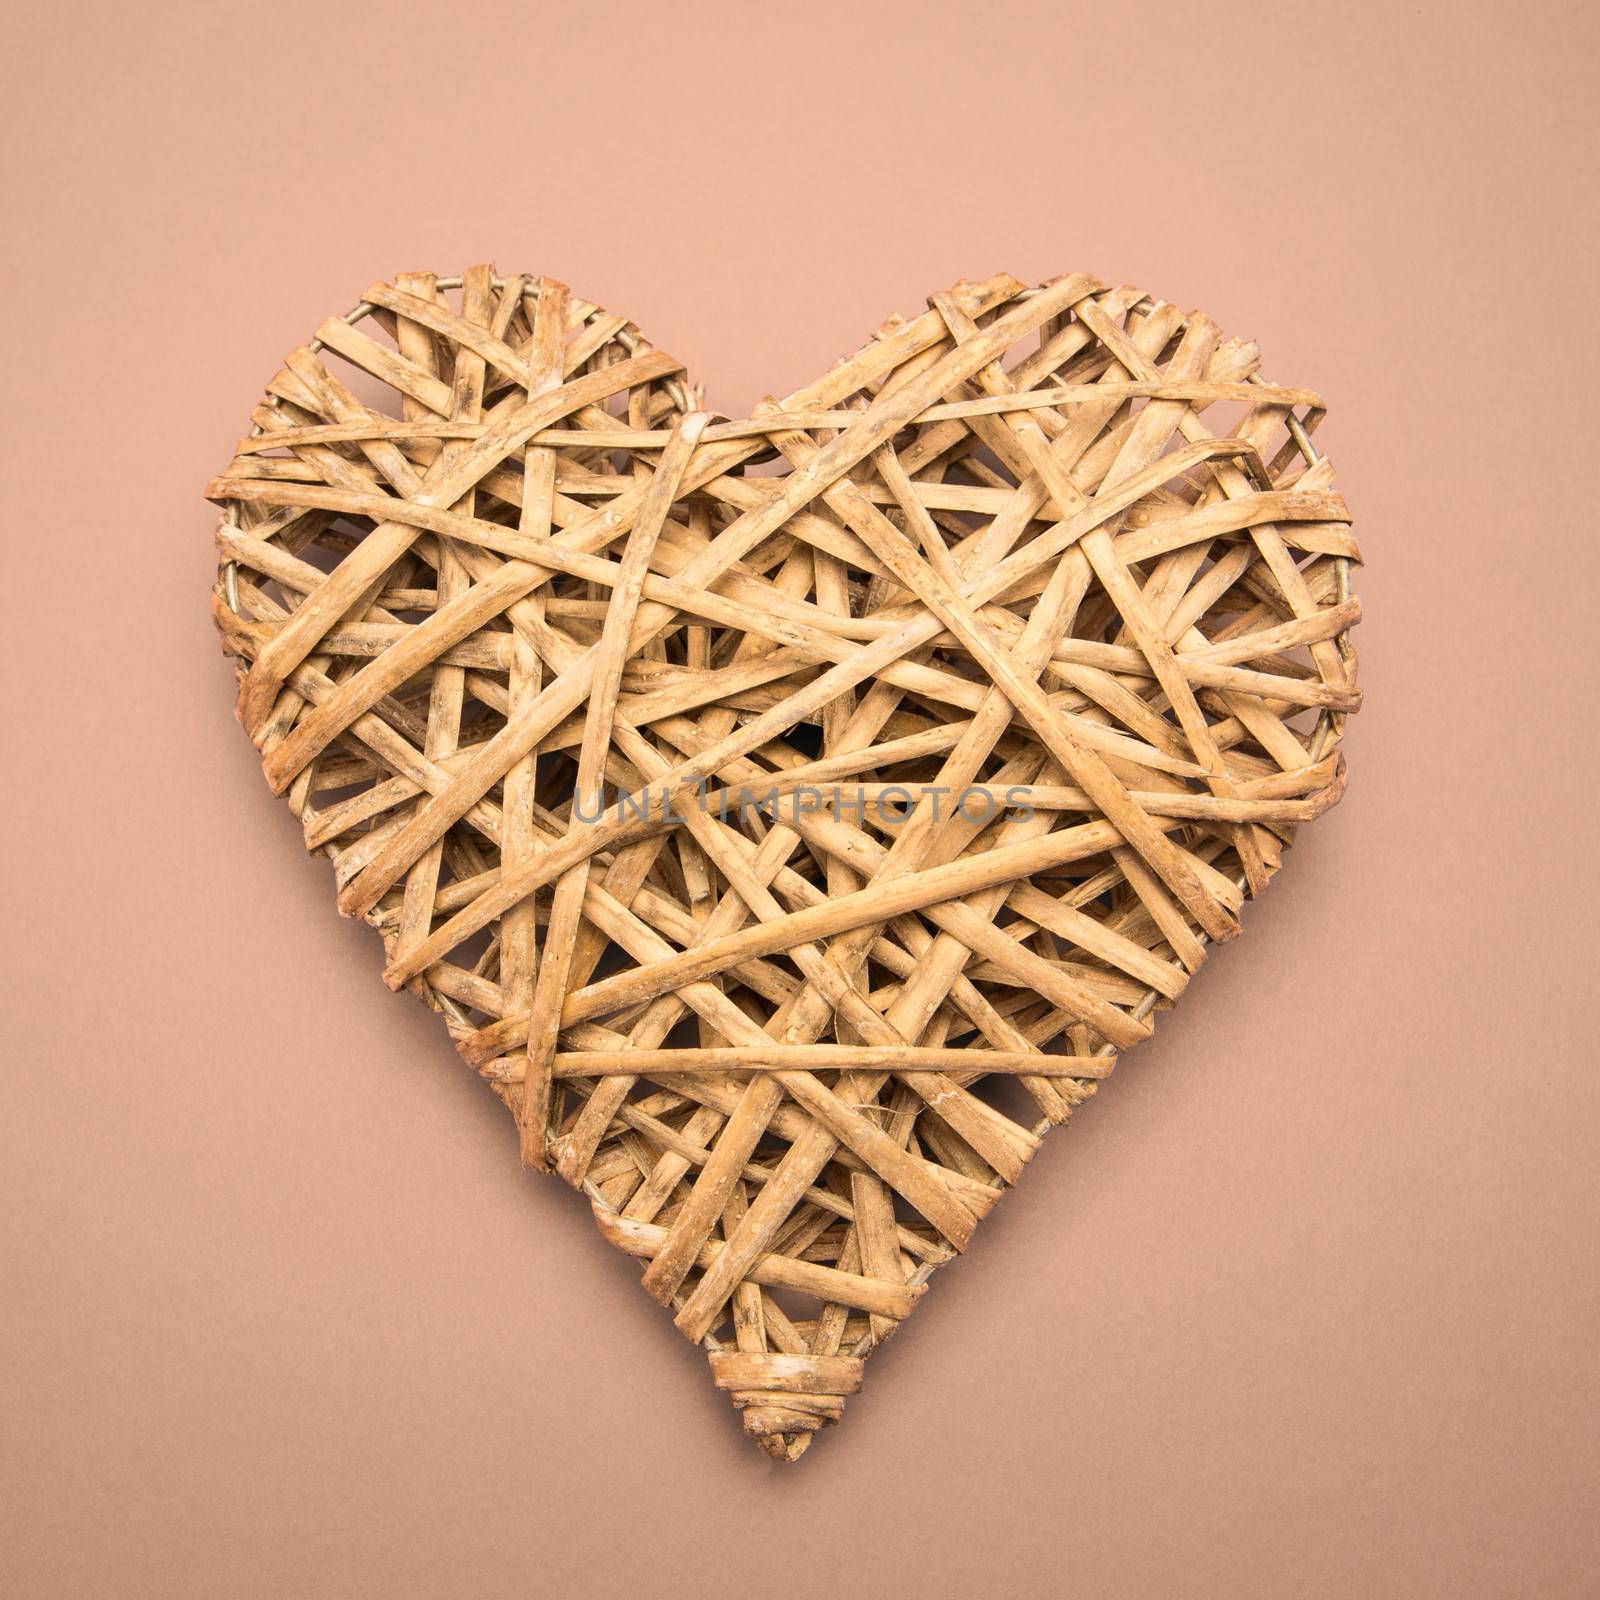 Wicker heart ornament by Wavebreakmedia